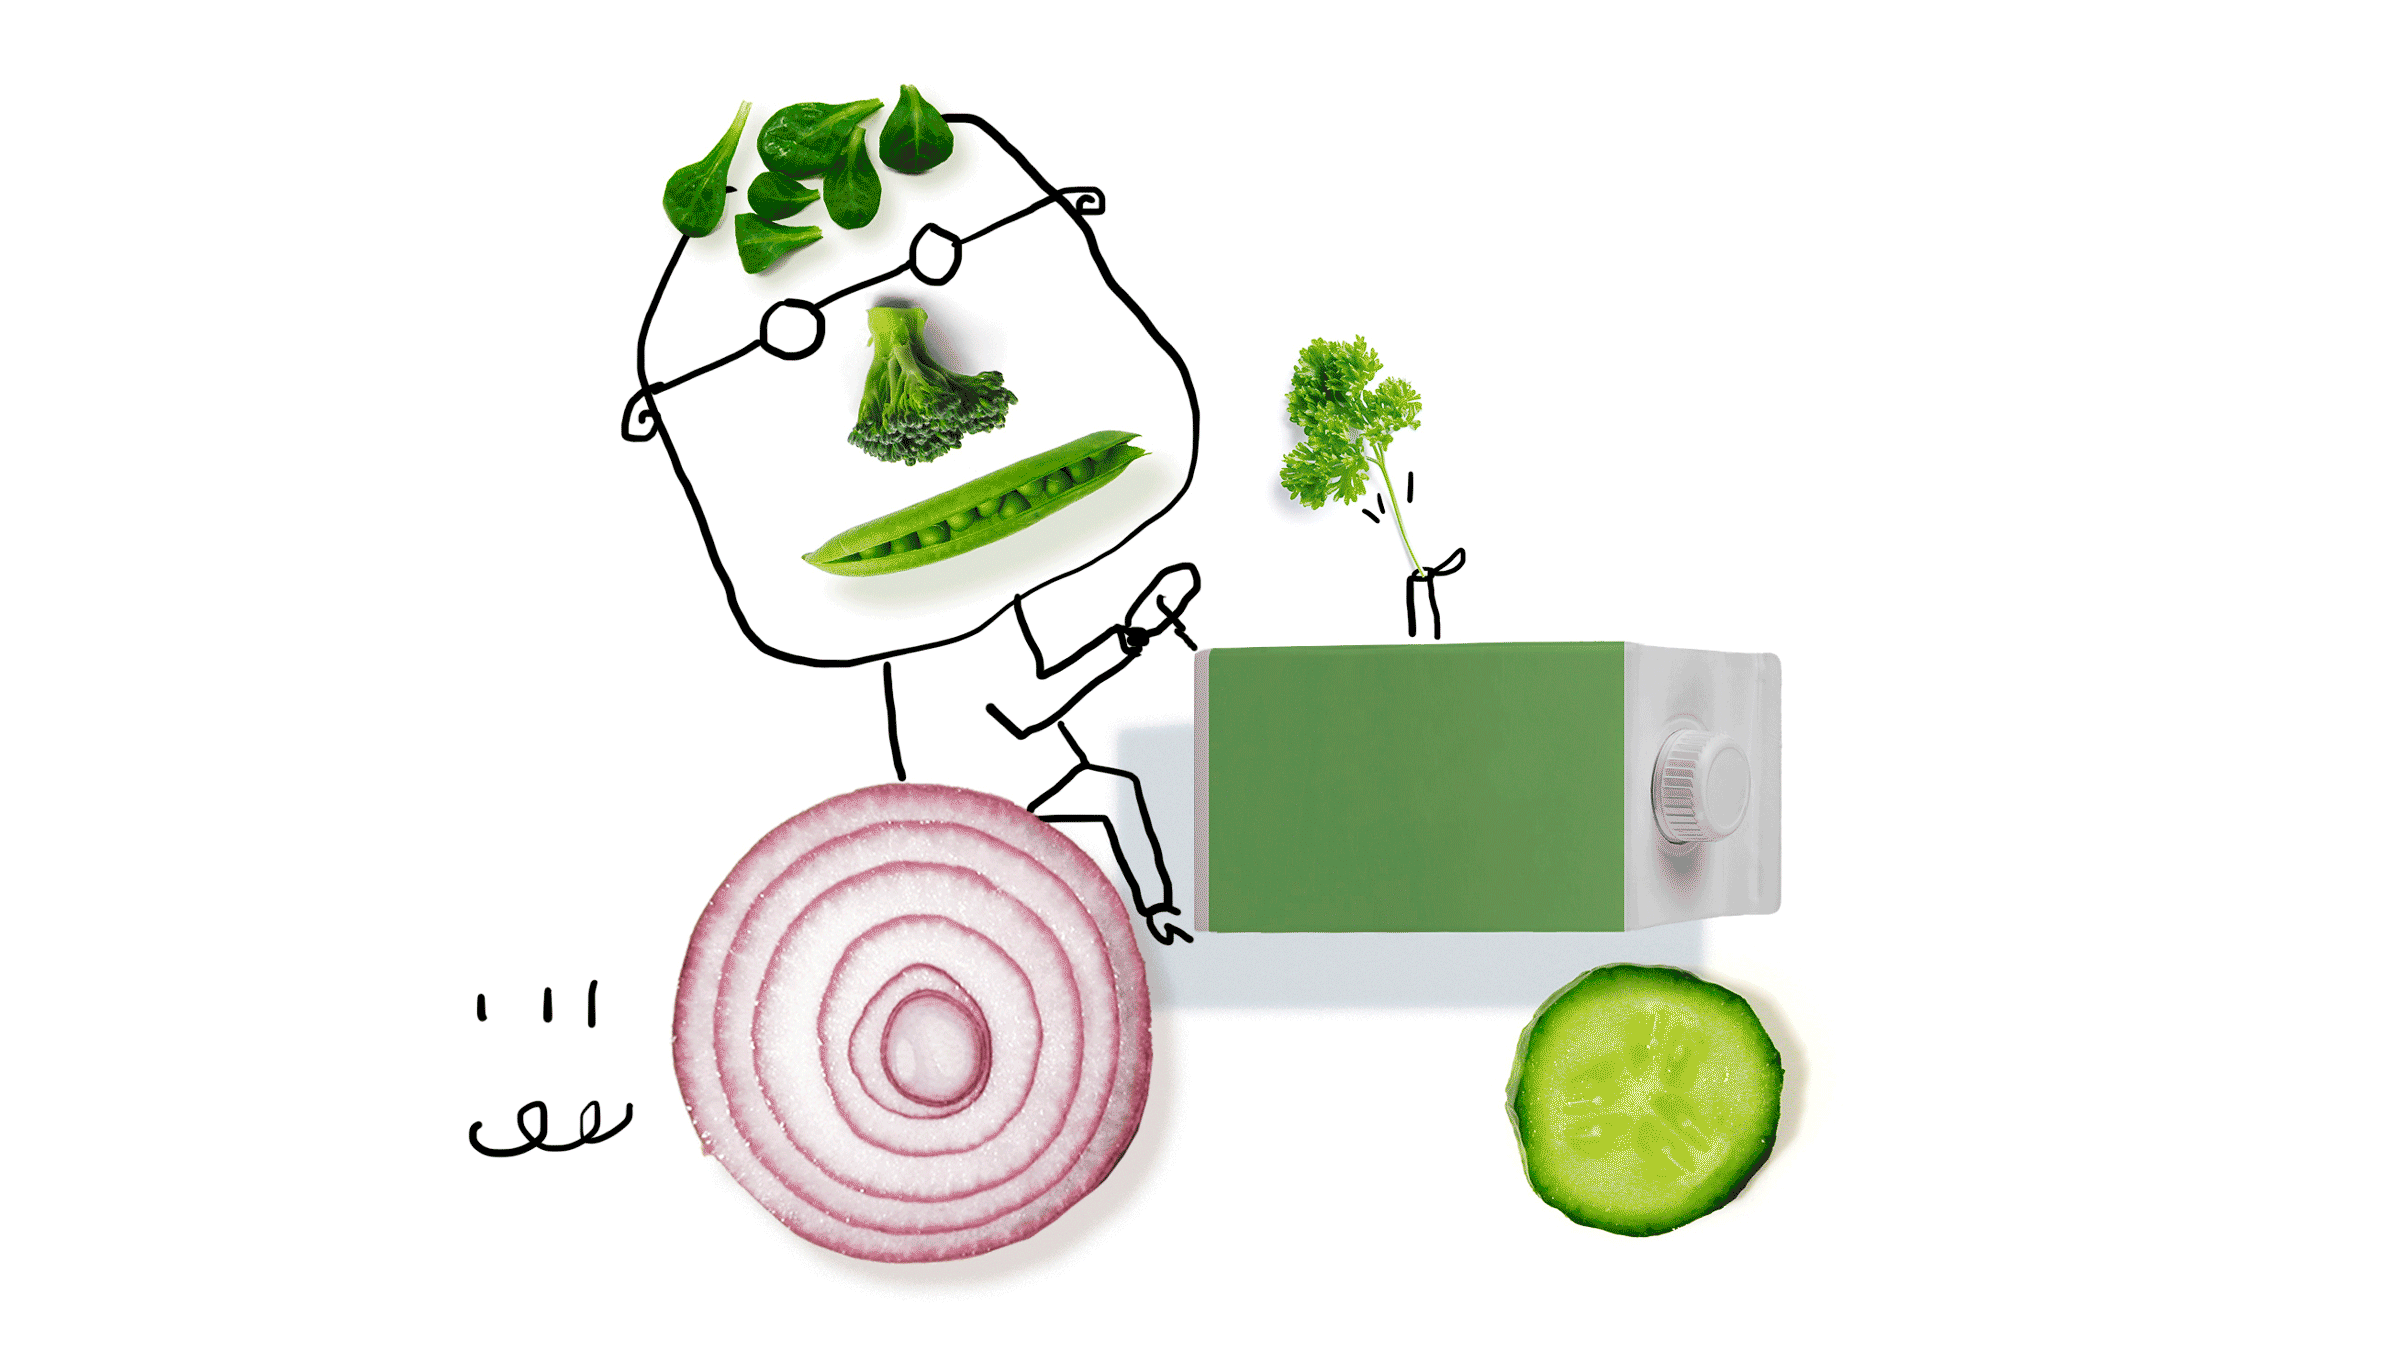 organic farming illustration by serge bloch